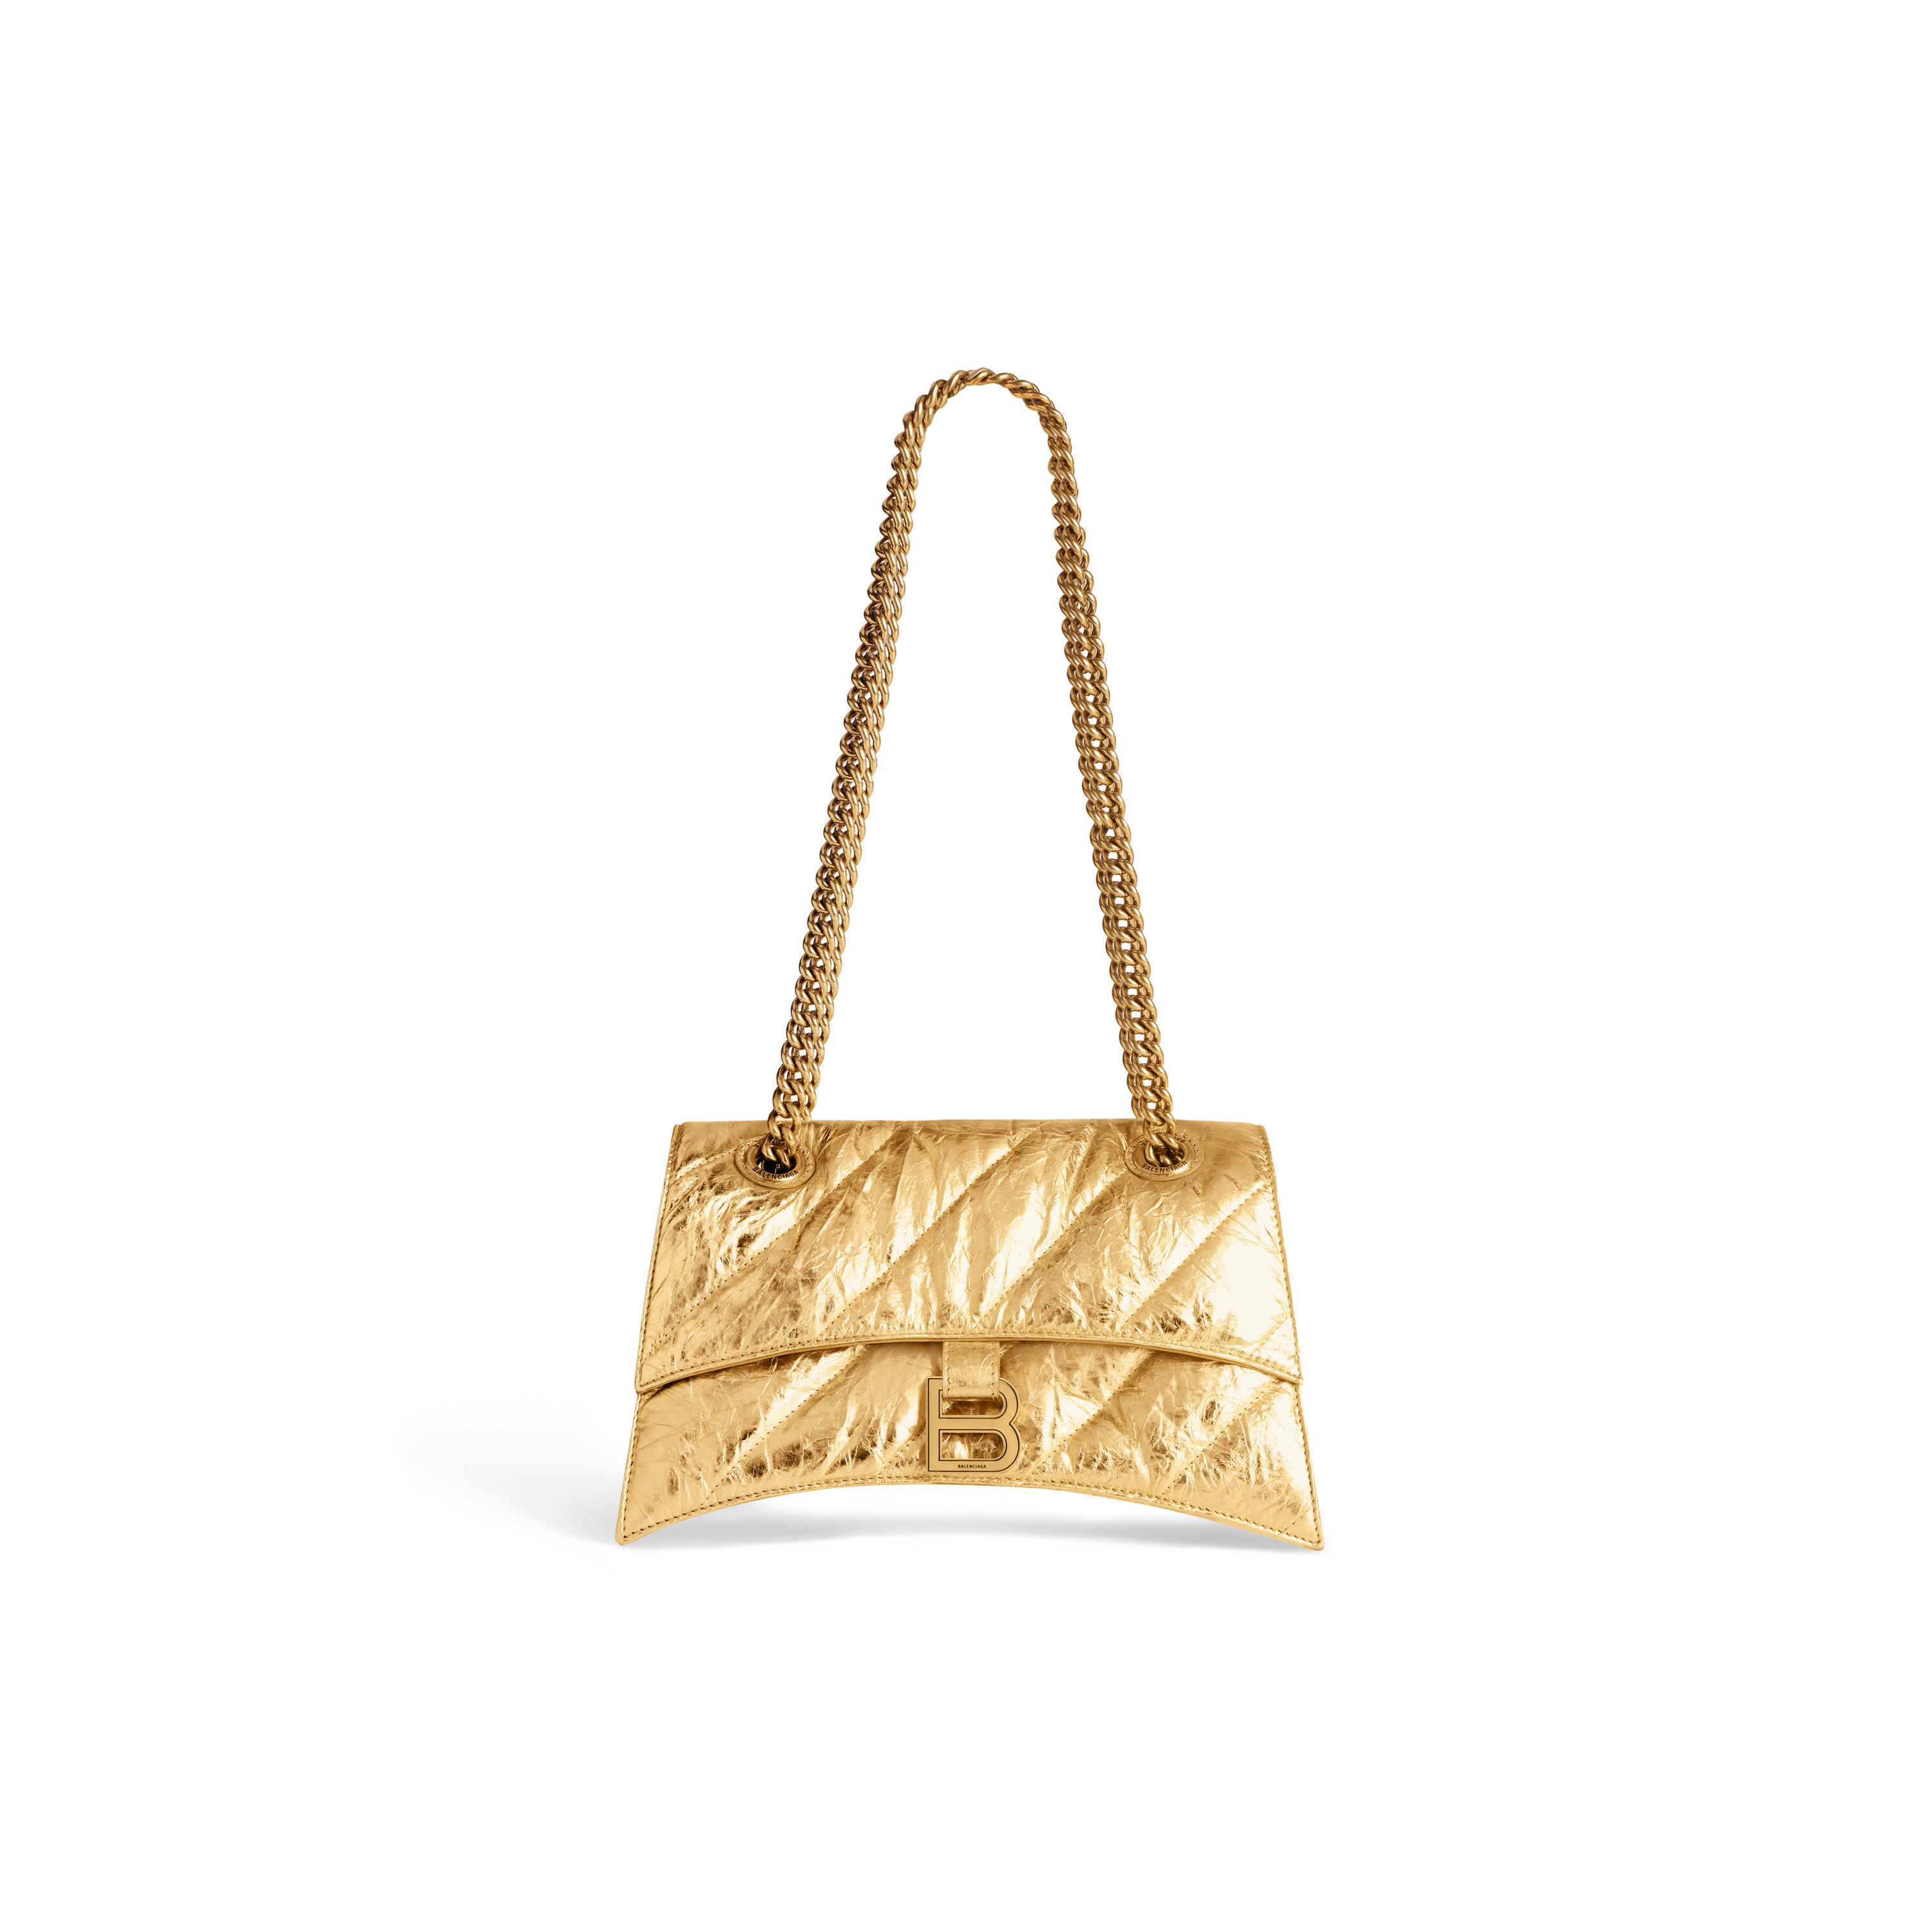 Balenciaga Gold Envelope Clutch FREE SHIPPING